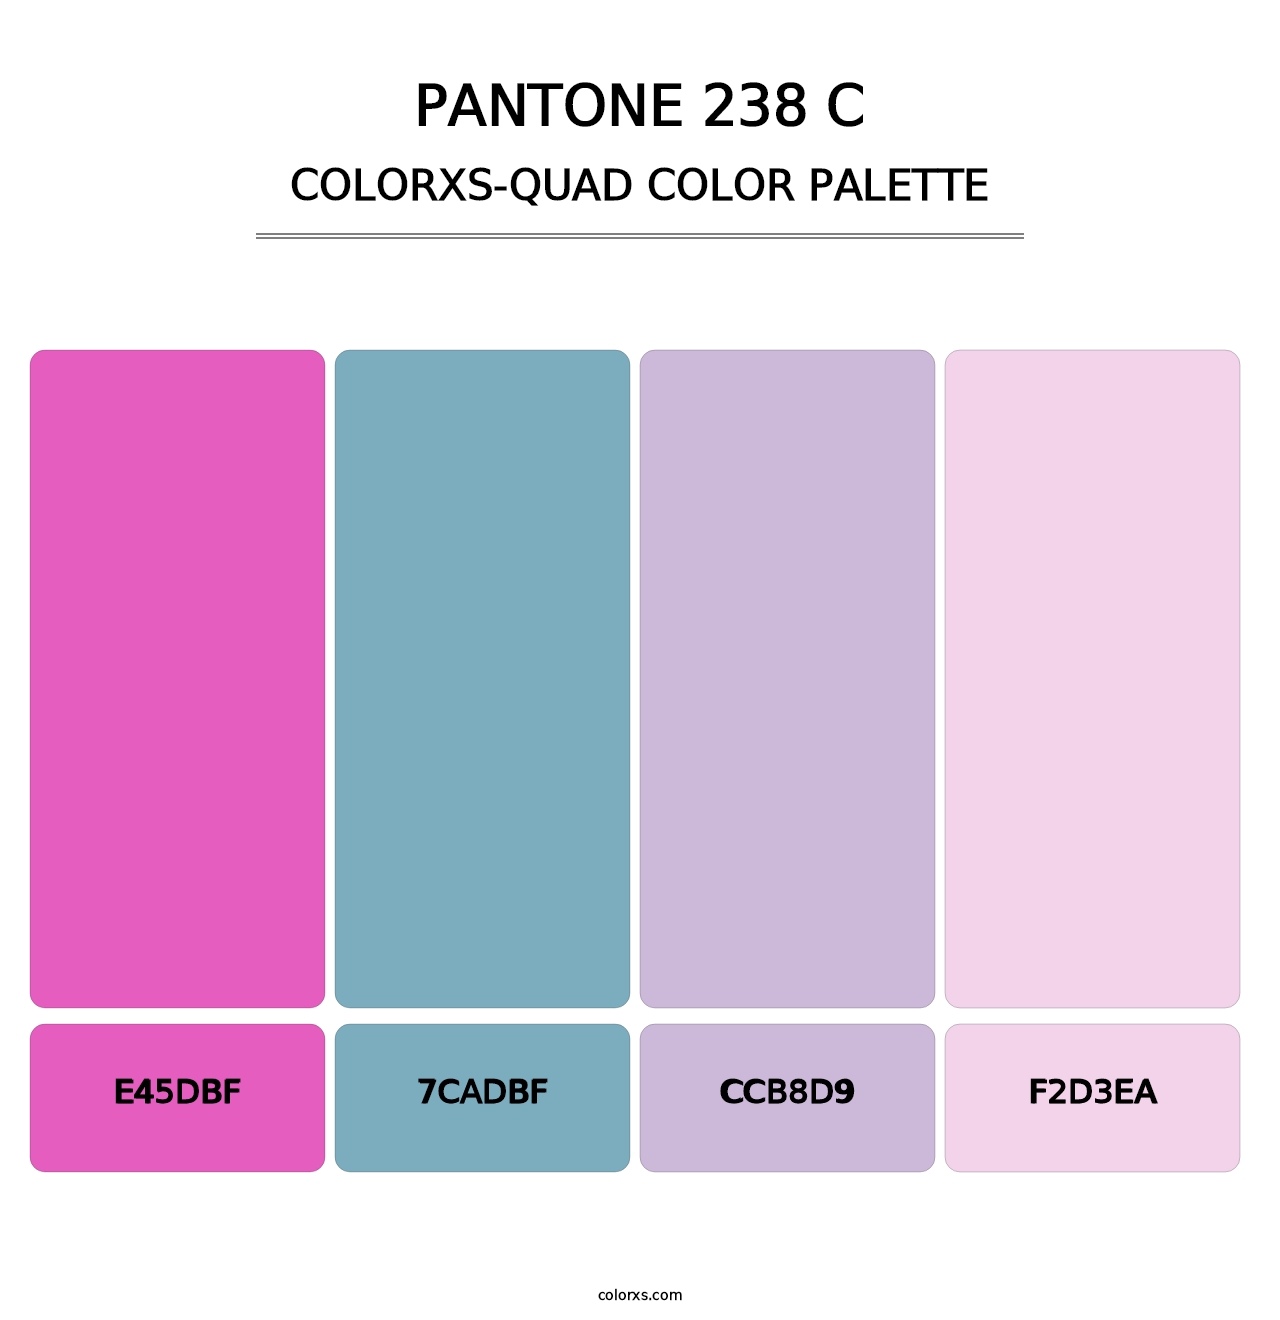 PANTONE 238 C - Colorxs Quad Palette